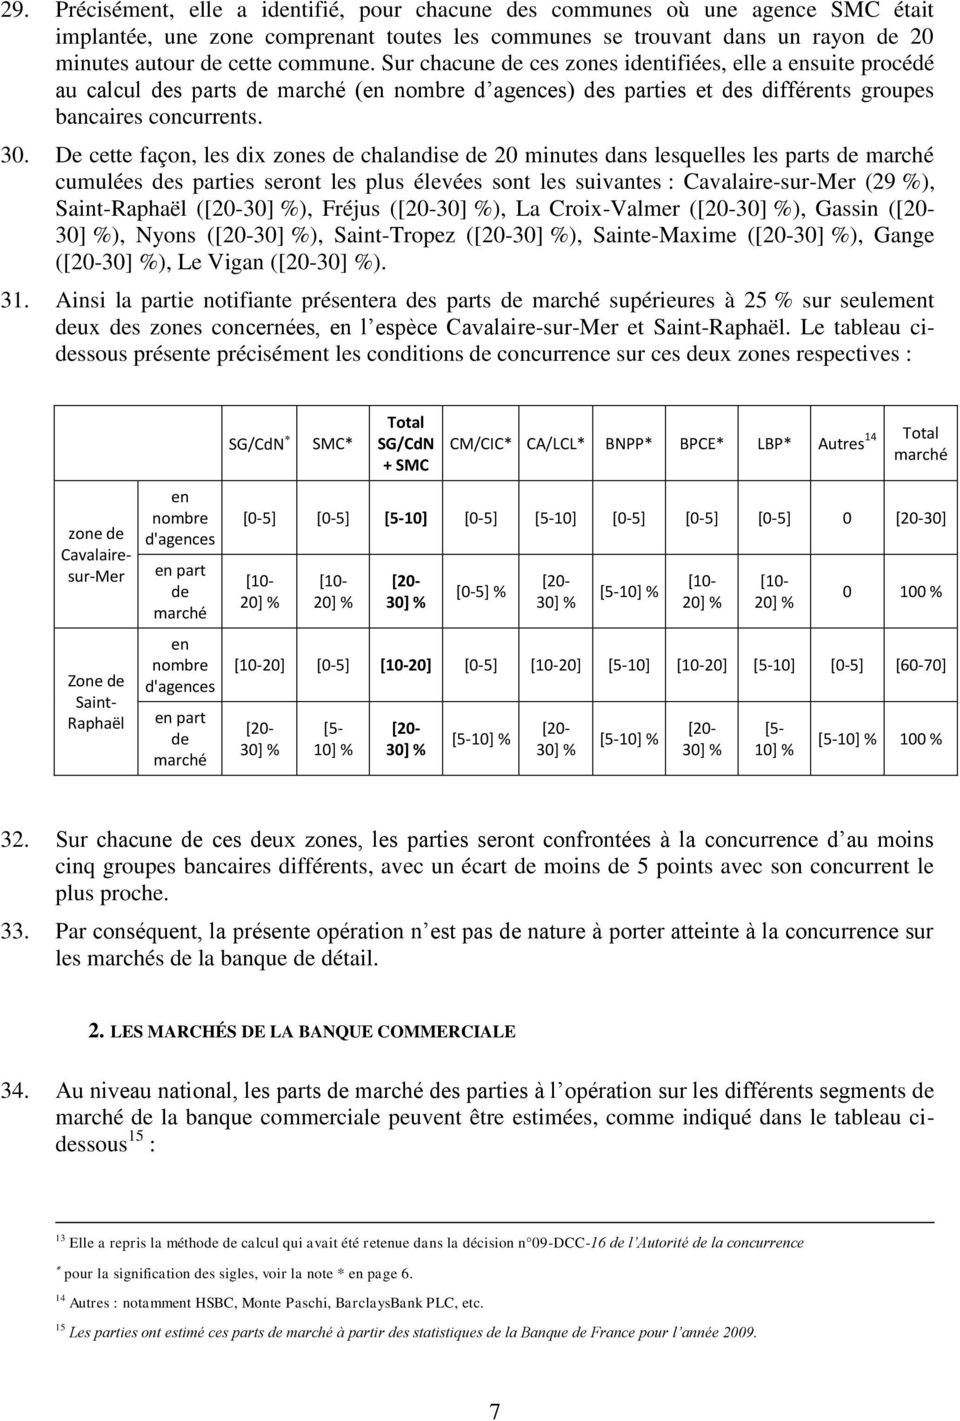 De cette façon, les dix zones de chalandise de 20 minutes dans lesquelles les parts de marché cumulées des parties seront les plus élevées sont les suivantes : Cavalaire-sur-Mer (29 %), Saint-Raphaël